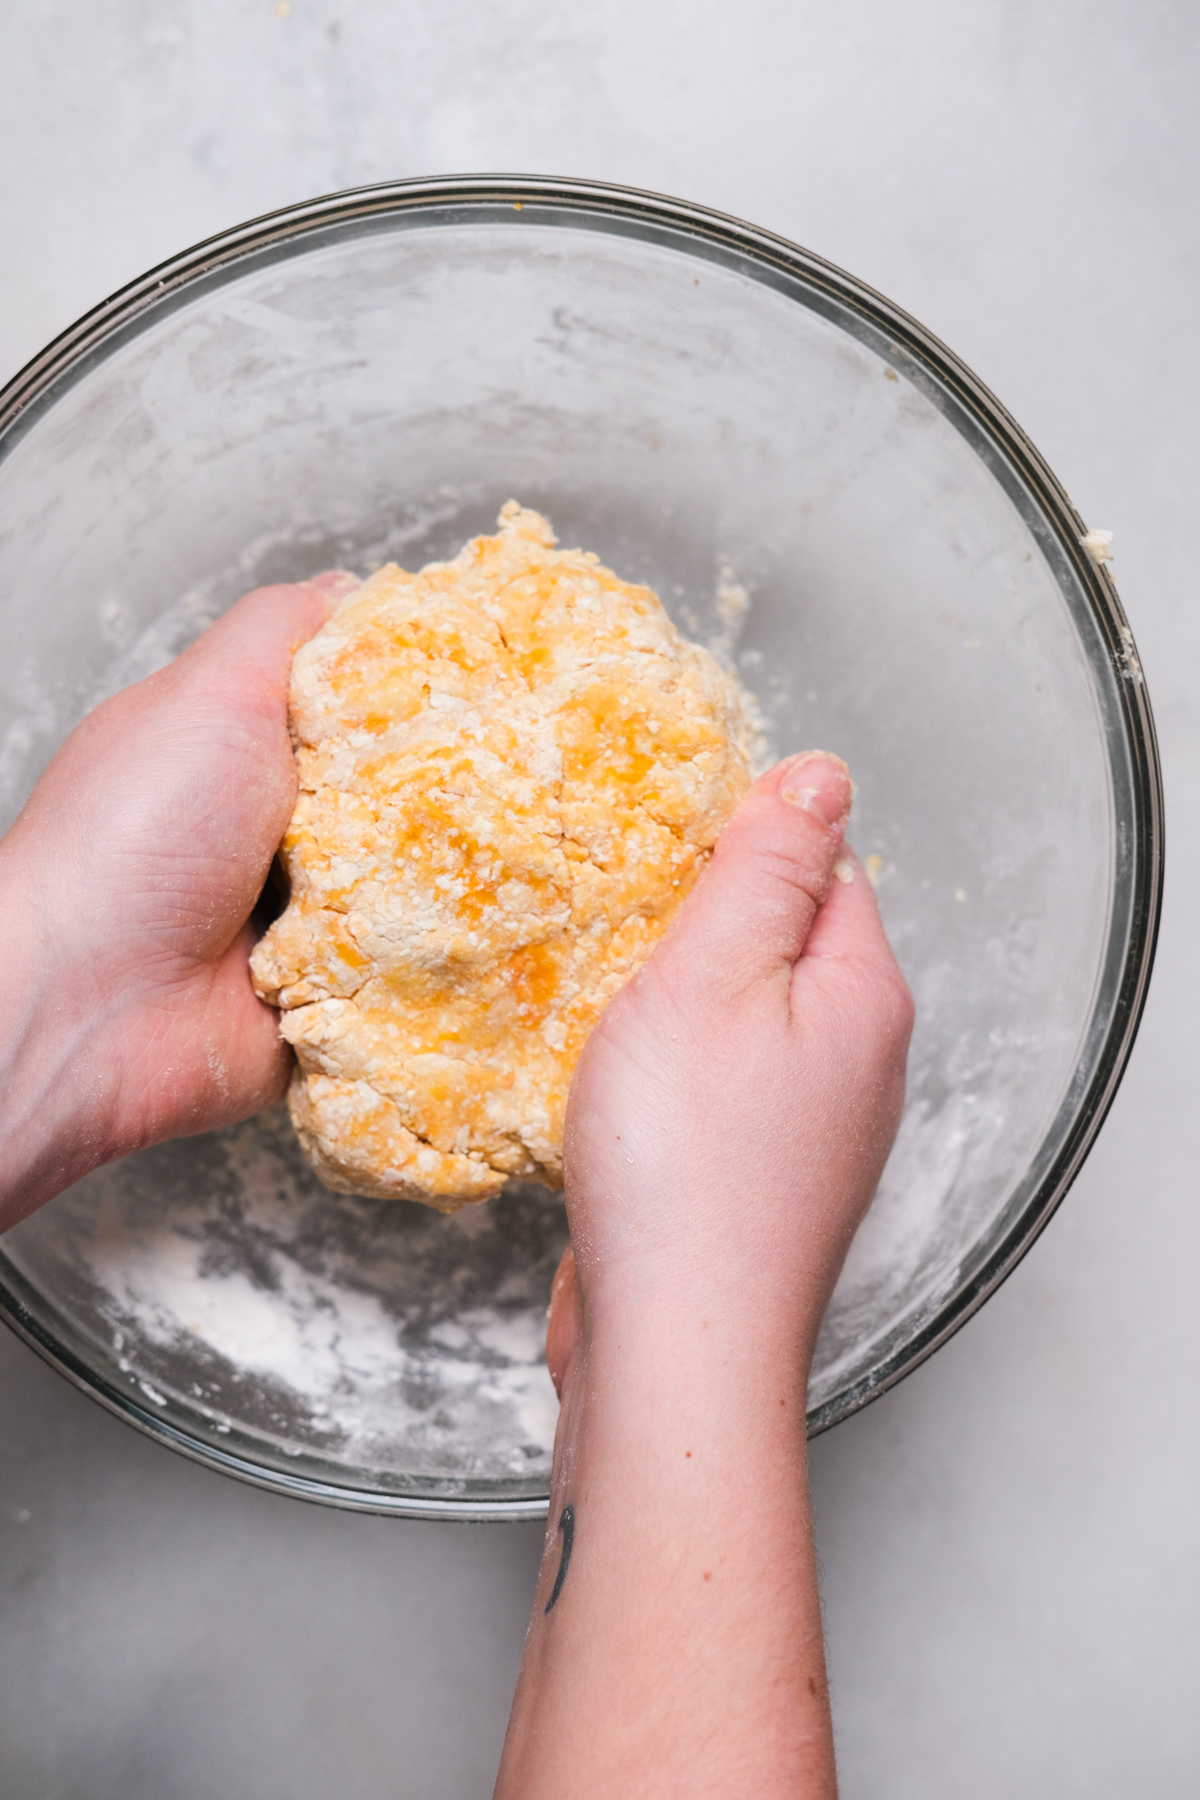 forming gnocchi dough